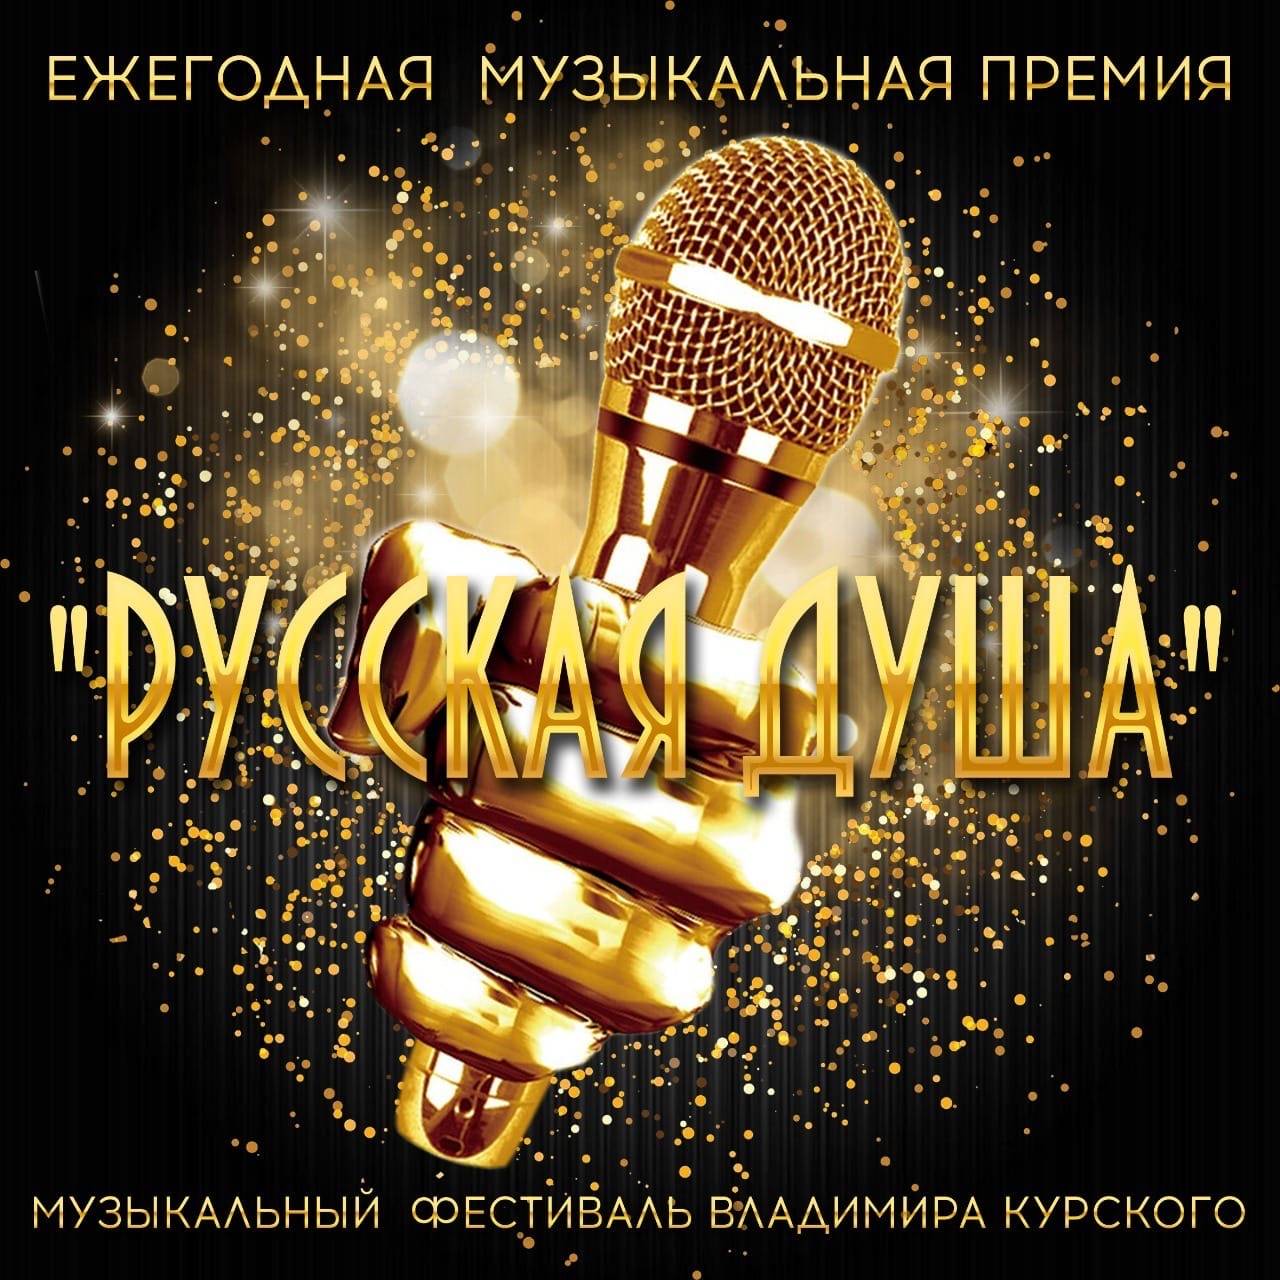 Иконка канала "РУССКАЯ ДУША " Ежегодная музыкальная премия